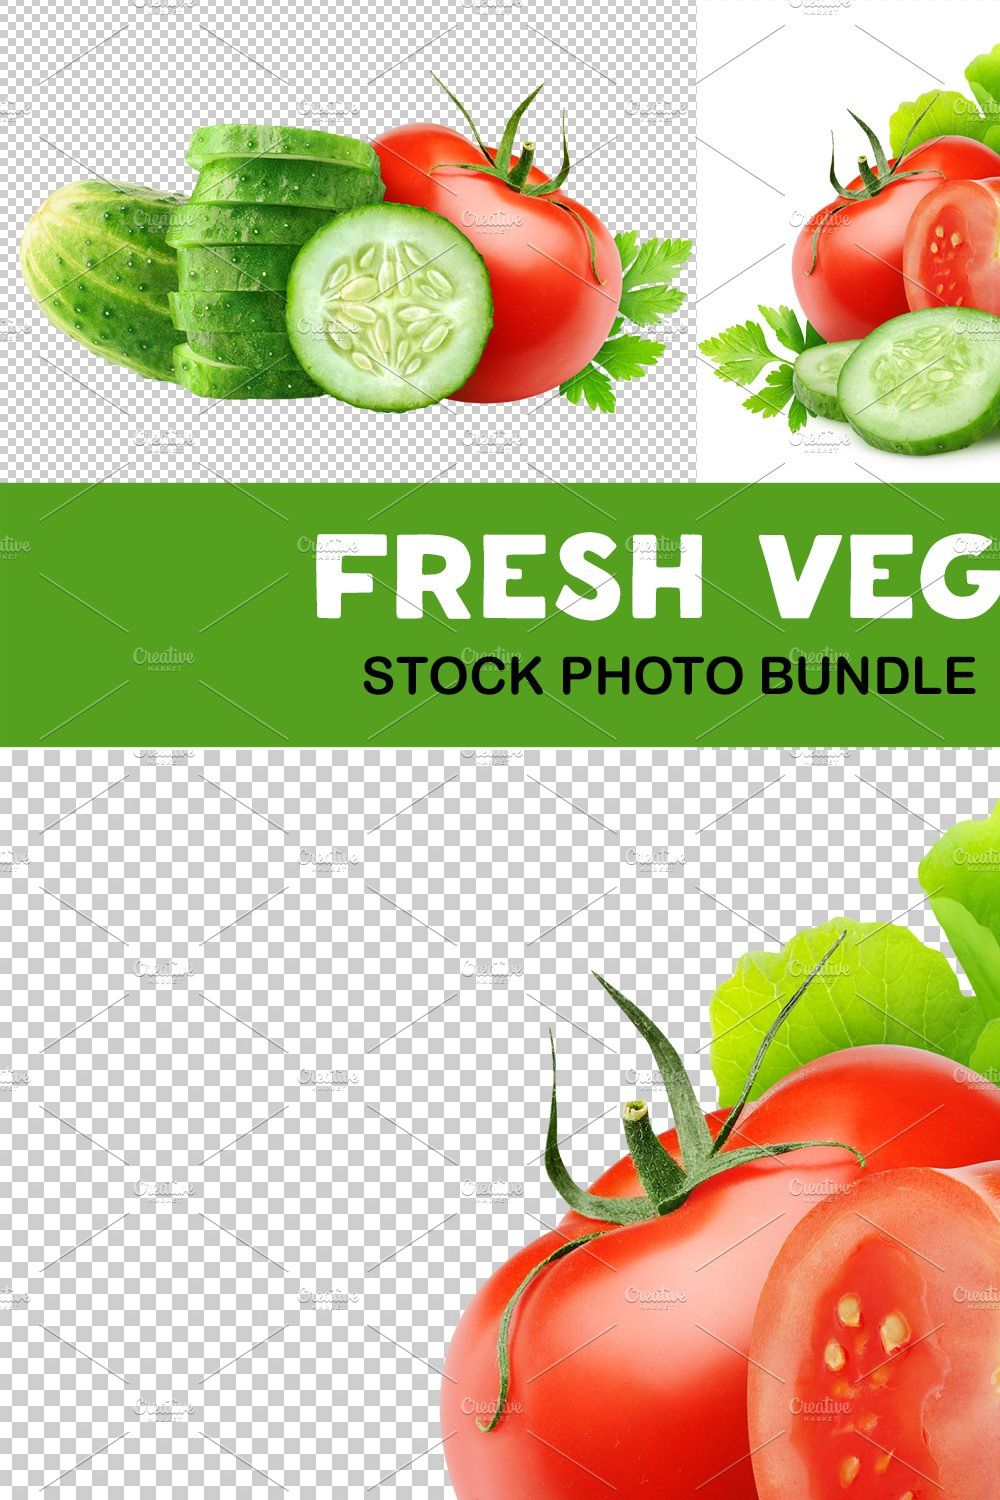 Fresh salad vegetables pinterest preview image.